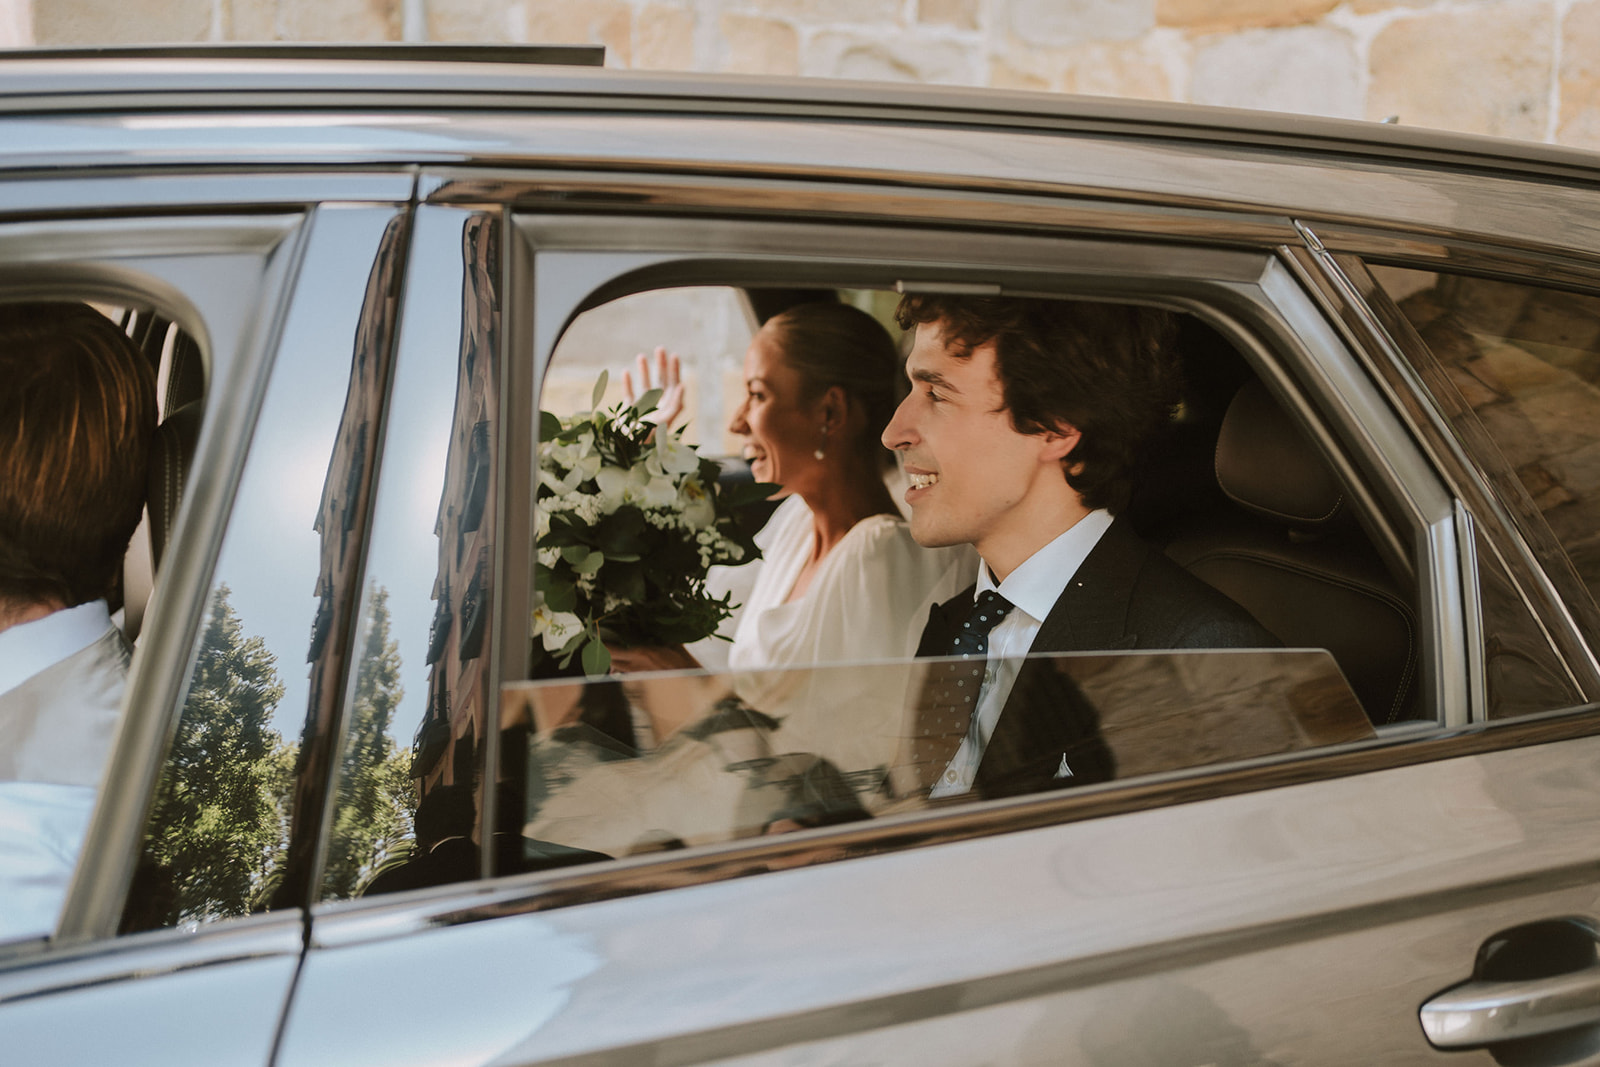 Detalle de los novios después de su boda, metidos en el coche